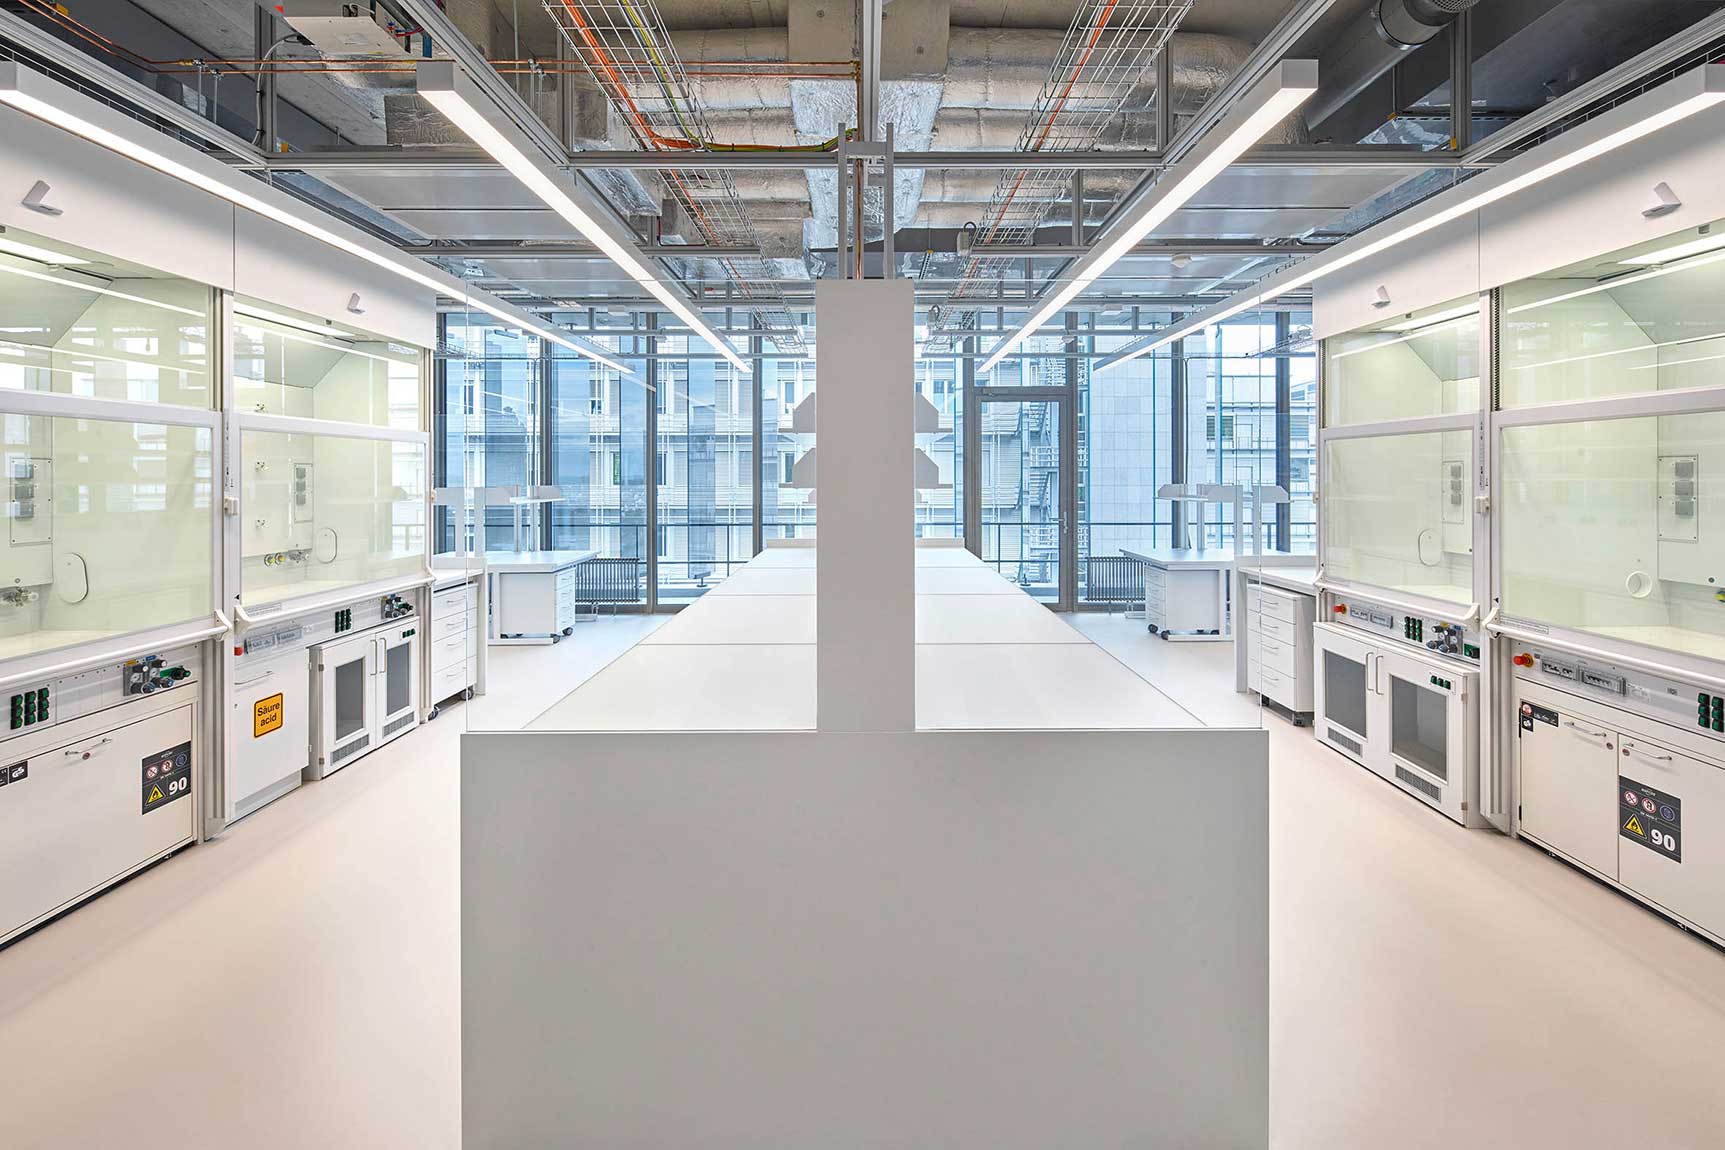 2021 – Einweihung des neuen Laborgebäudes UZI 5 auf dem Campus Irchel